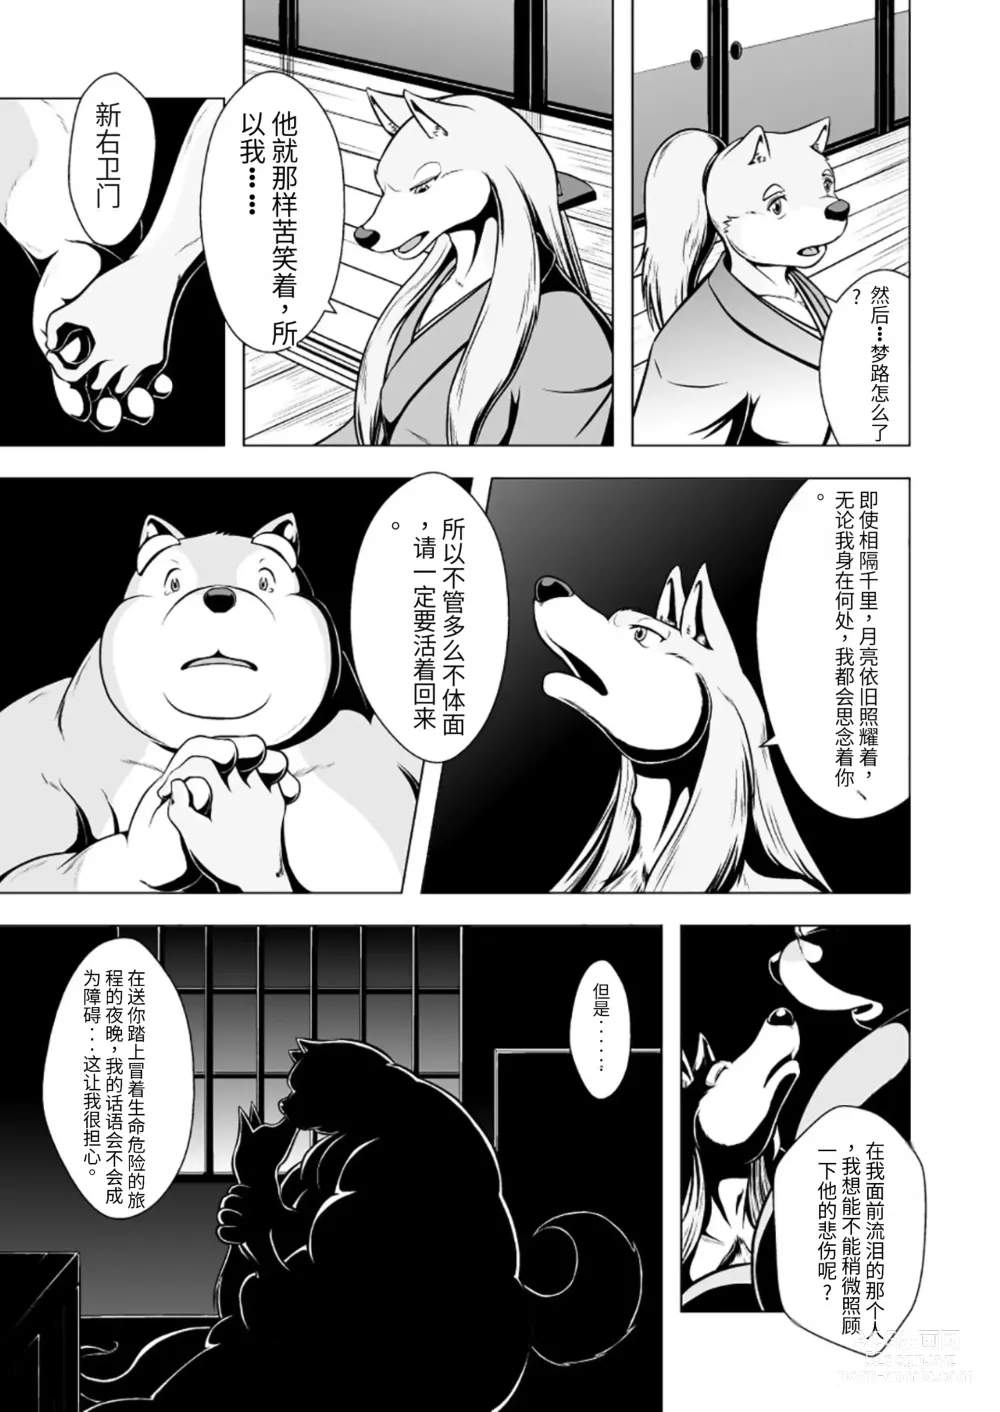 Page 9 of doujinshi 狗津原细见